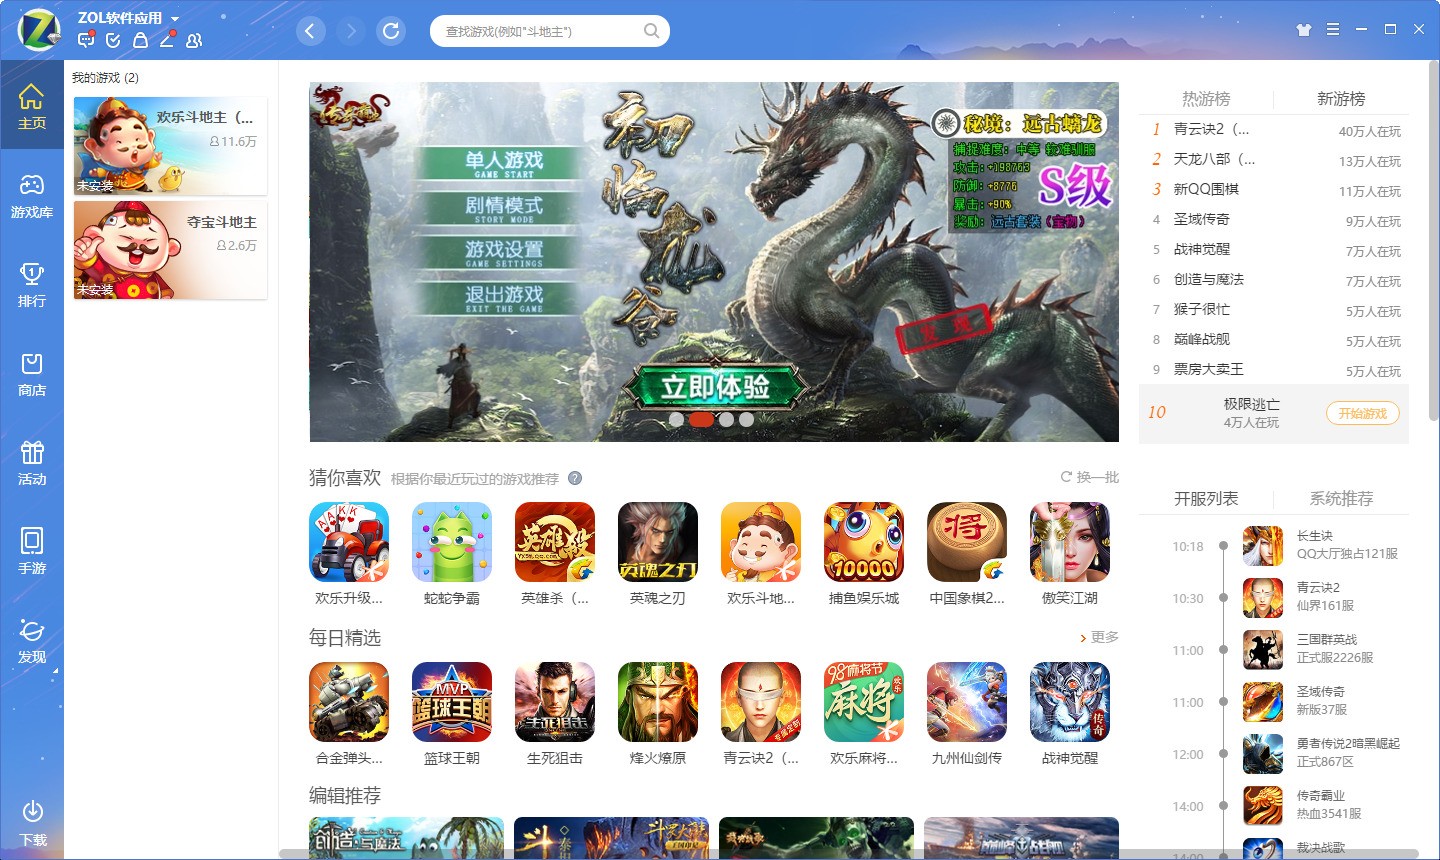 QQ游戏大厅 官方正式版下载